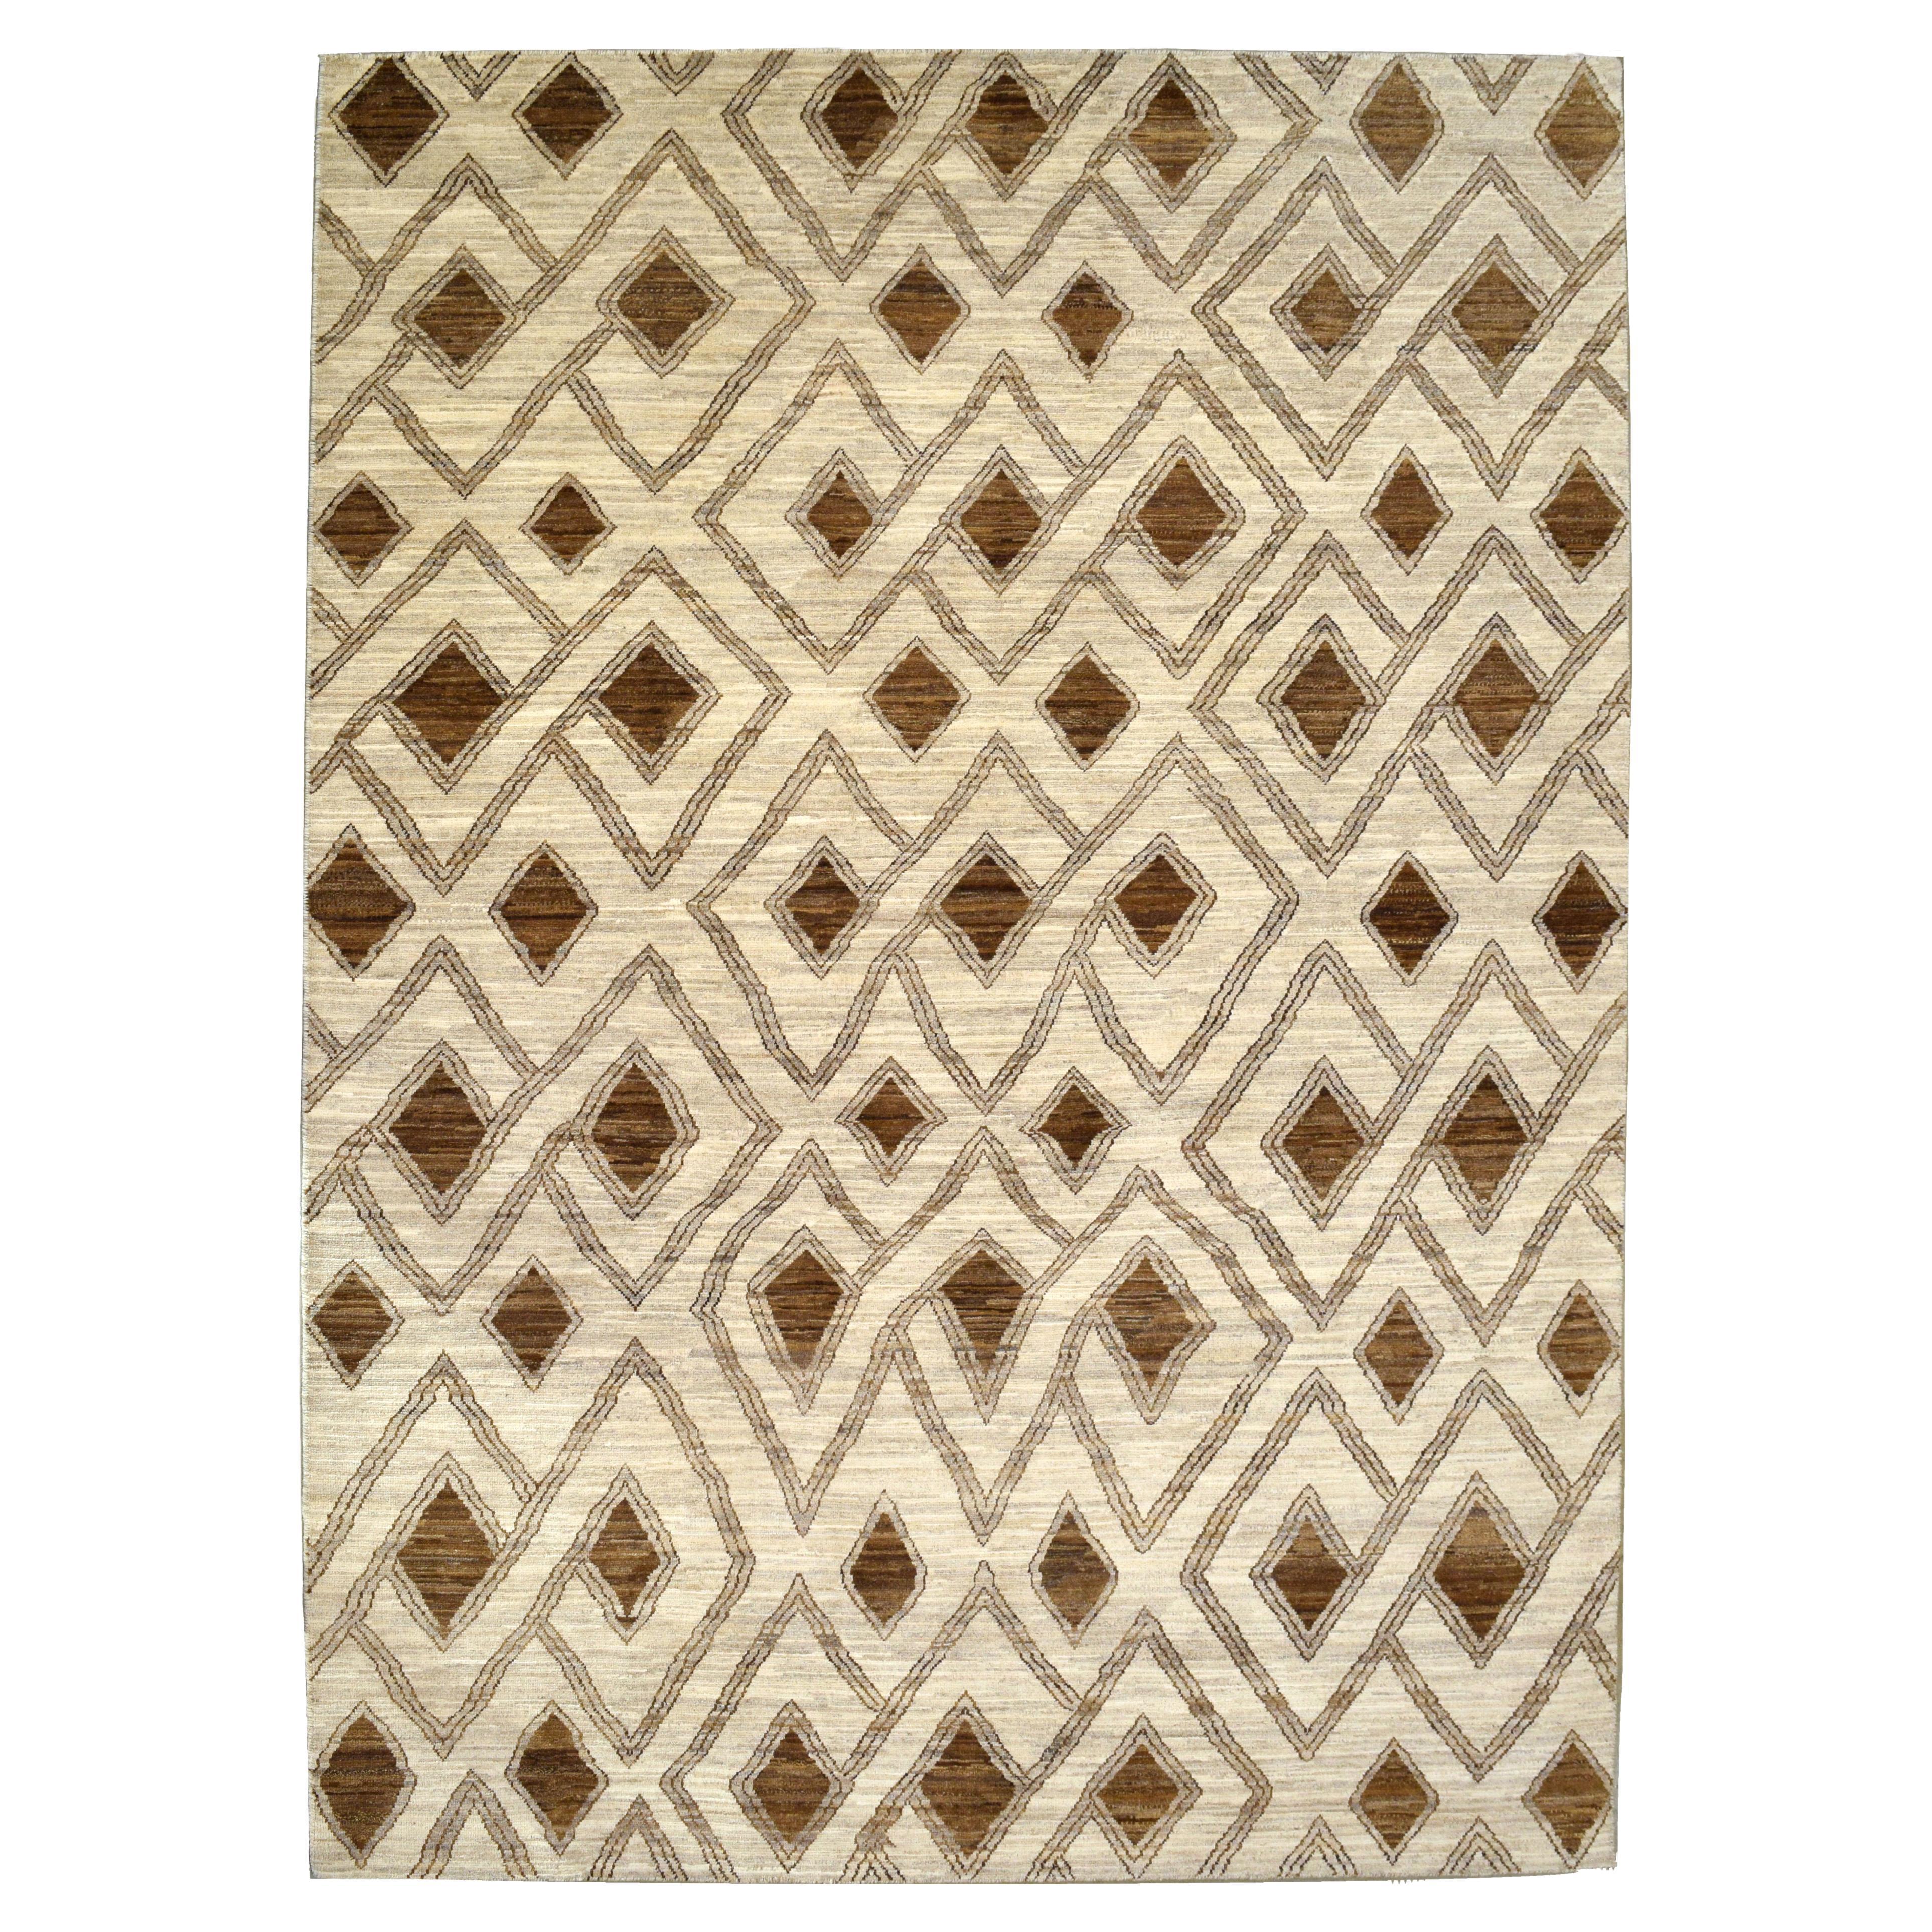 Tapis géométrique en laine neutre de couleur Brown et Cream, 6' x 9'.